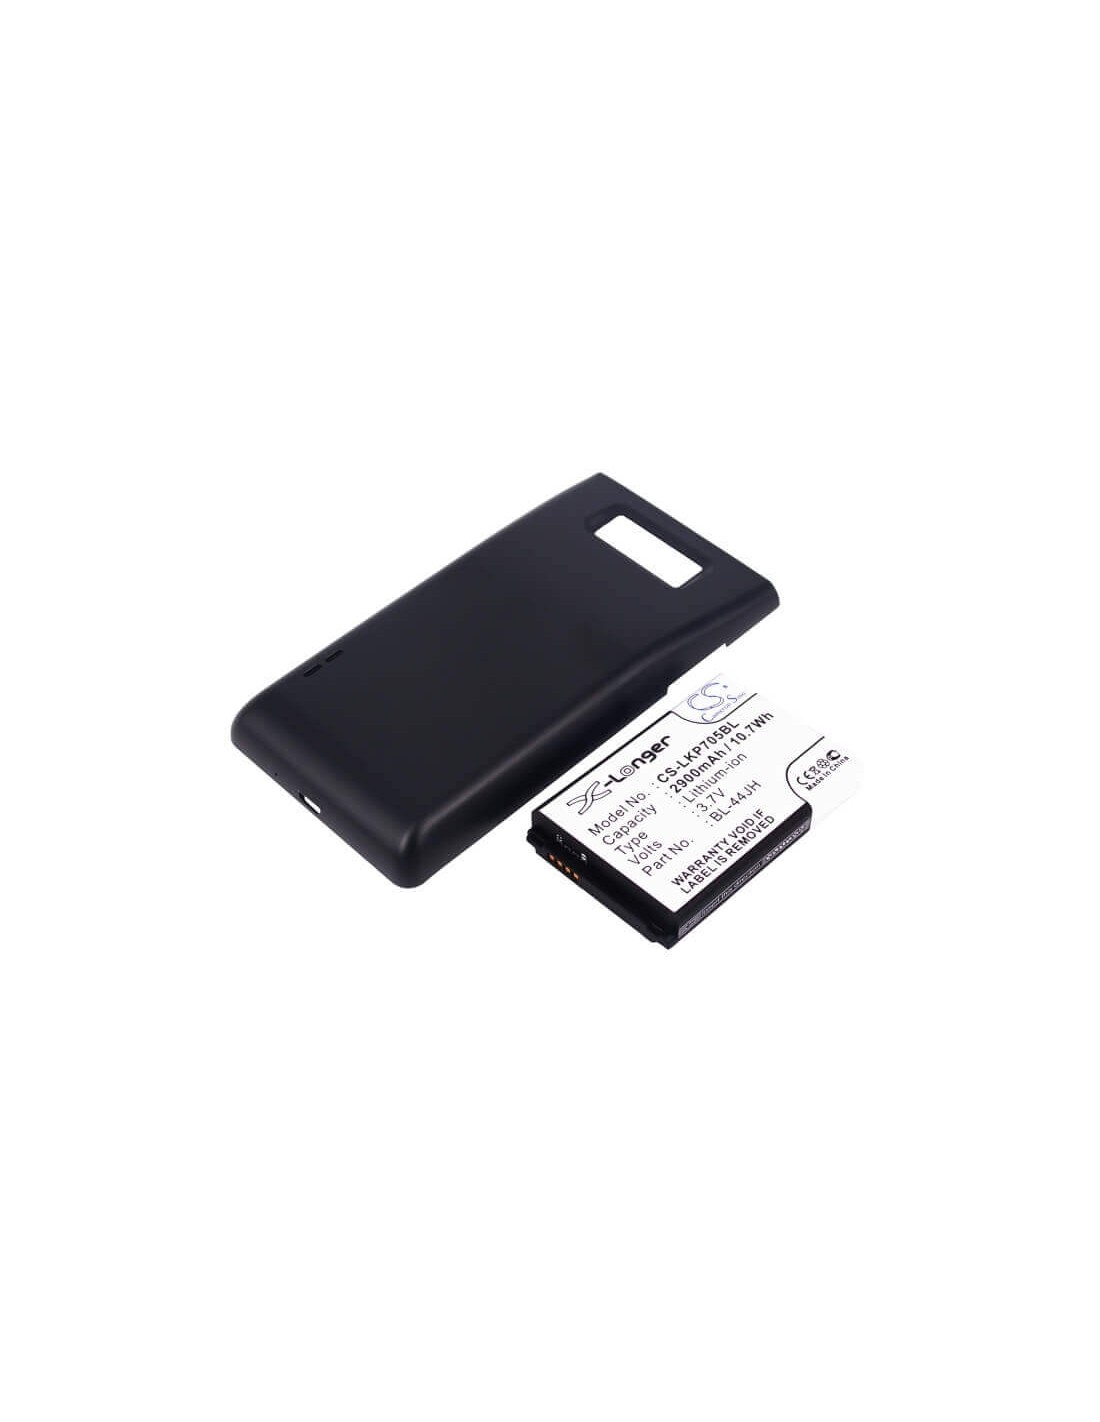 Battery for LG Optimus P705, Optimus P705g, black cover 3.7V, 2900mAh - 10.73Wh